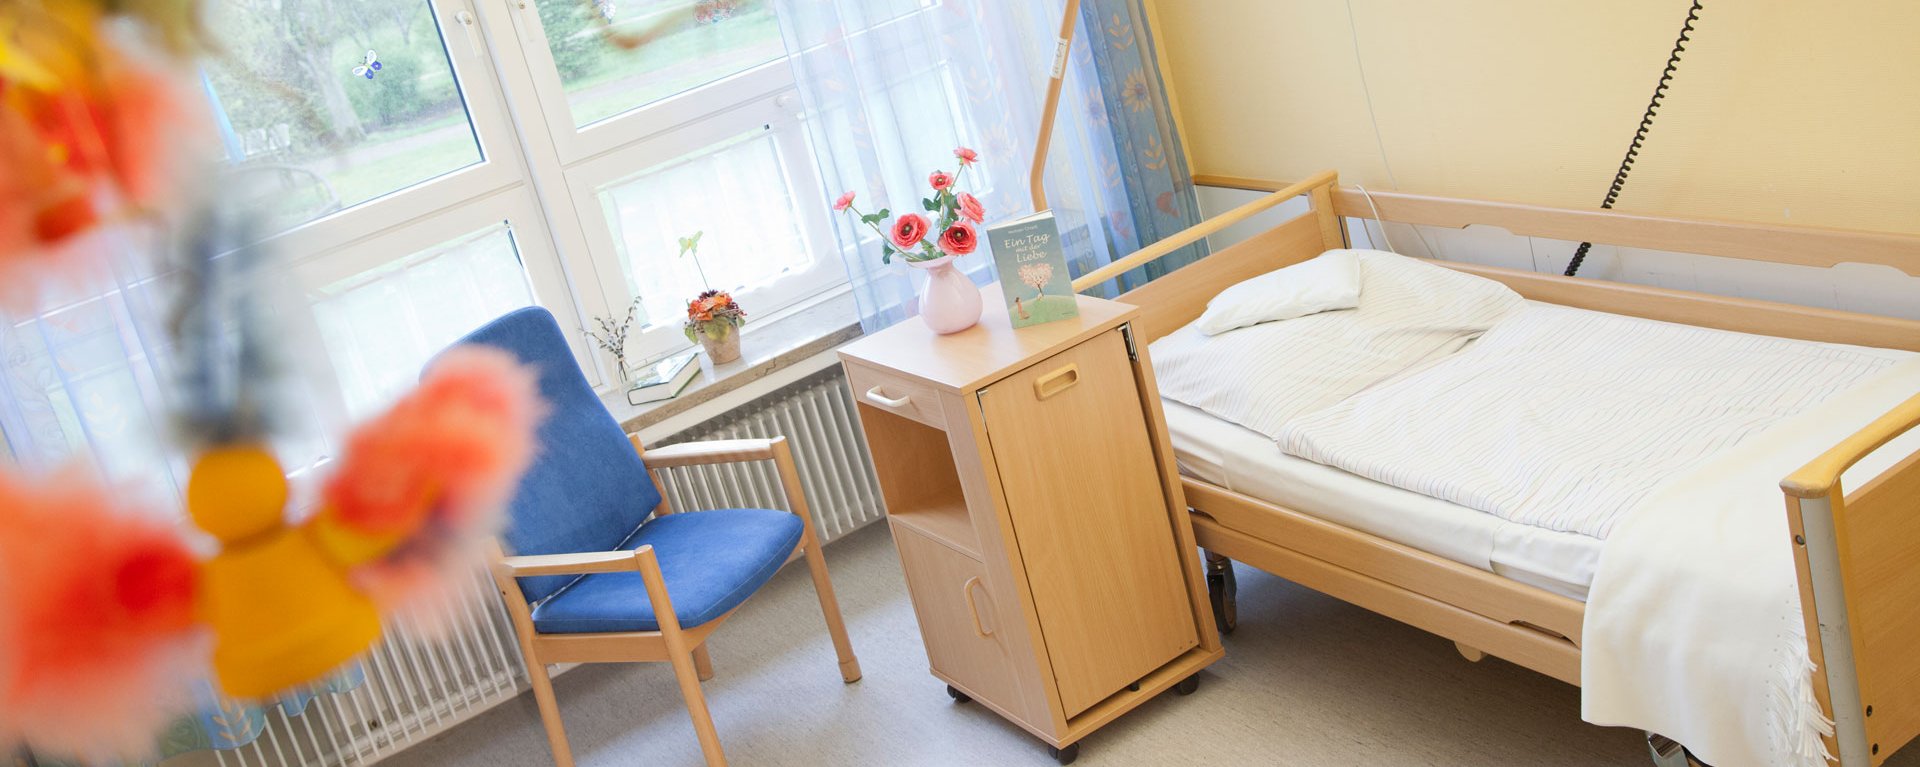 Aufnahme eines Zimmers der modernen Kurzzeitpflege an der Klinik Mindelheim mit Pflegebett, Besucherstuhl großen Fenstern und bunten Blumen unscharf im Vordergund